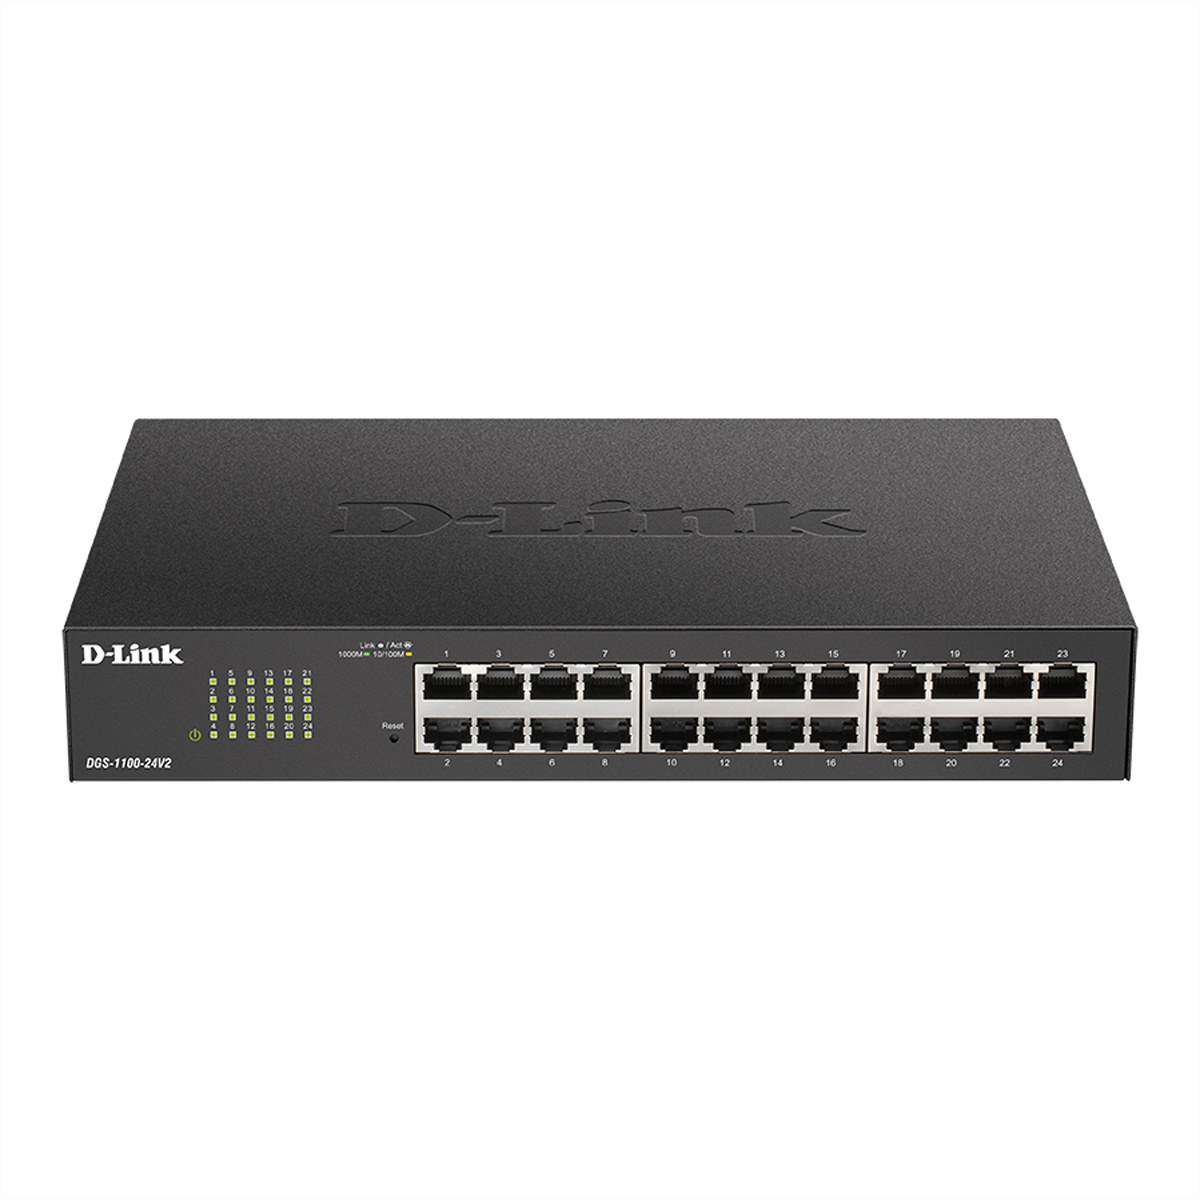 D-LINK DGS-1100-24V2 24-Port Switch Gigabit Switch Ethernet